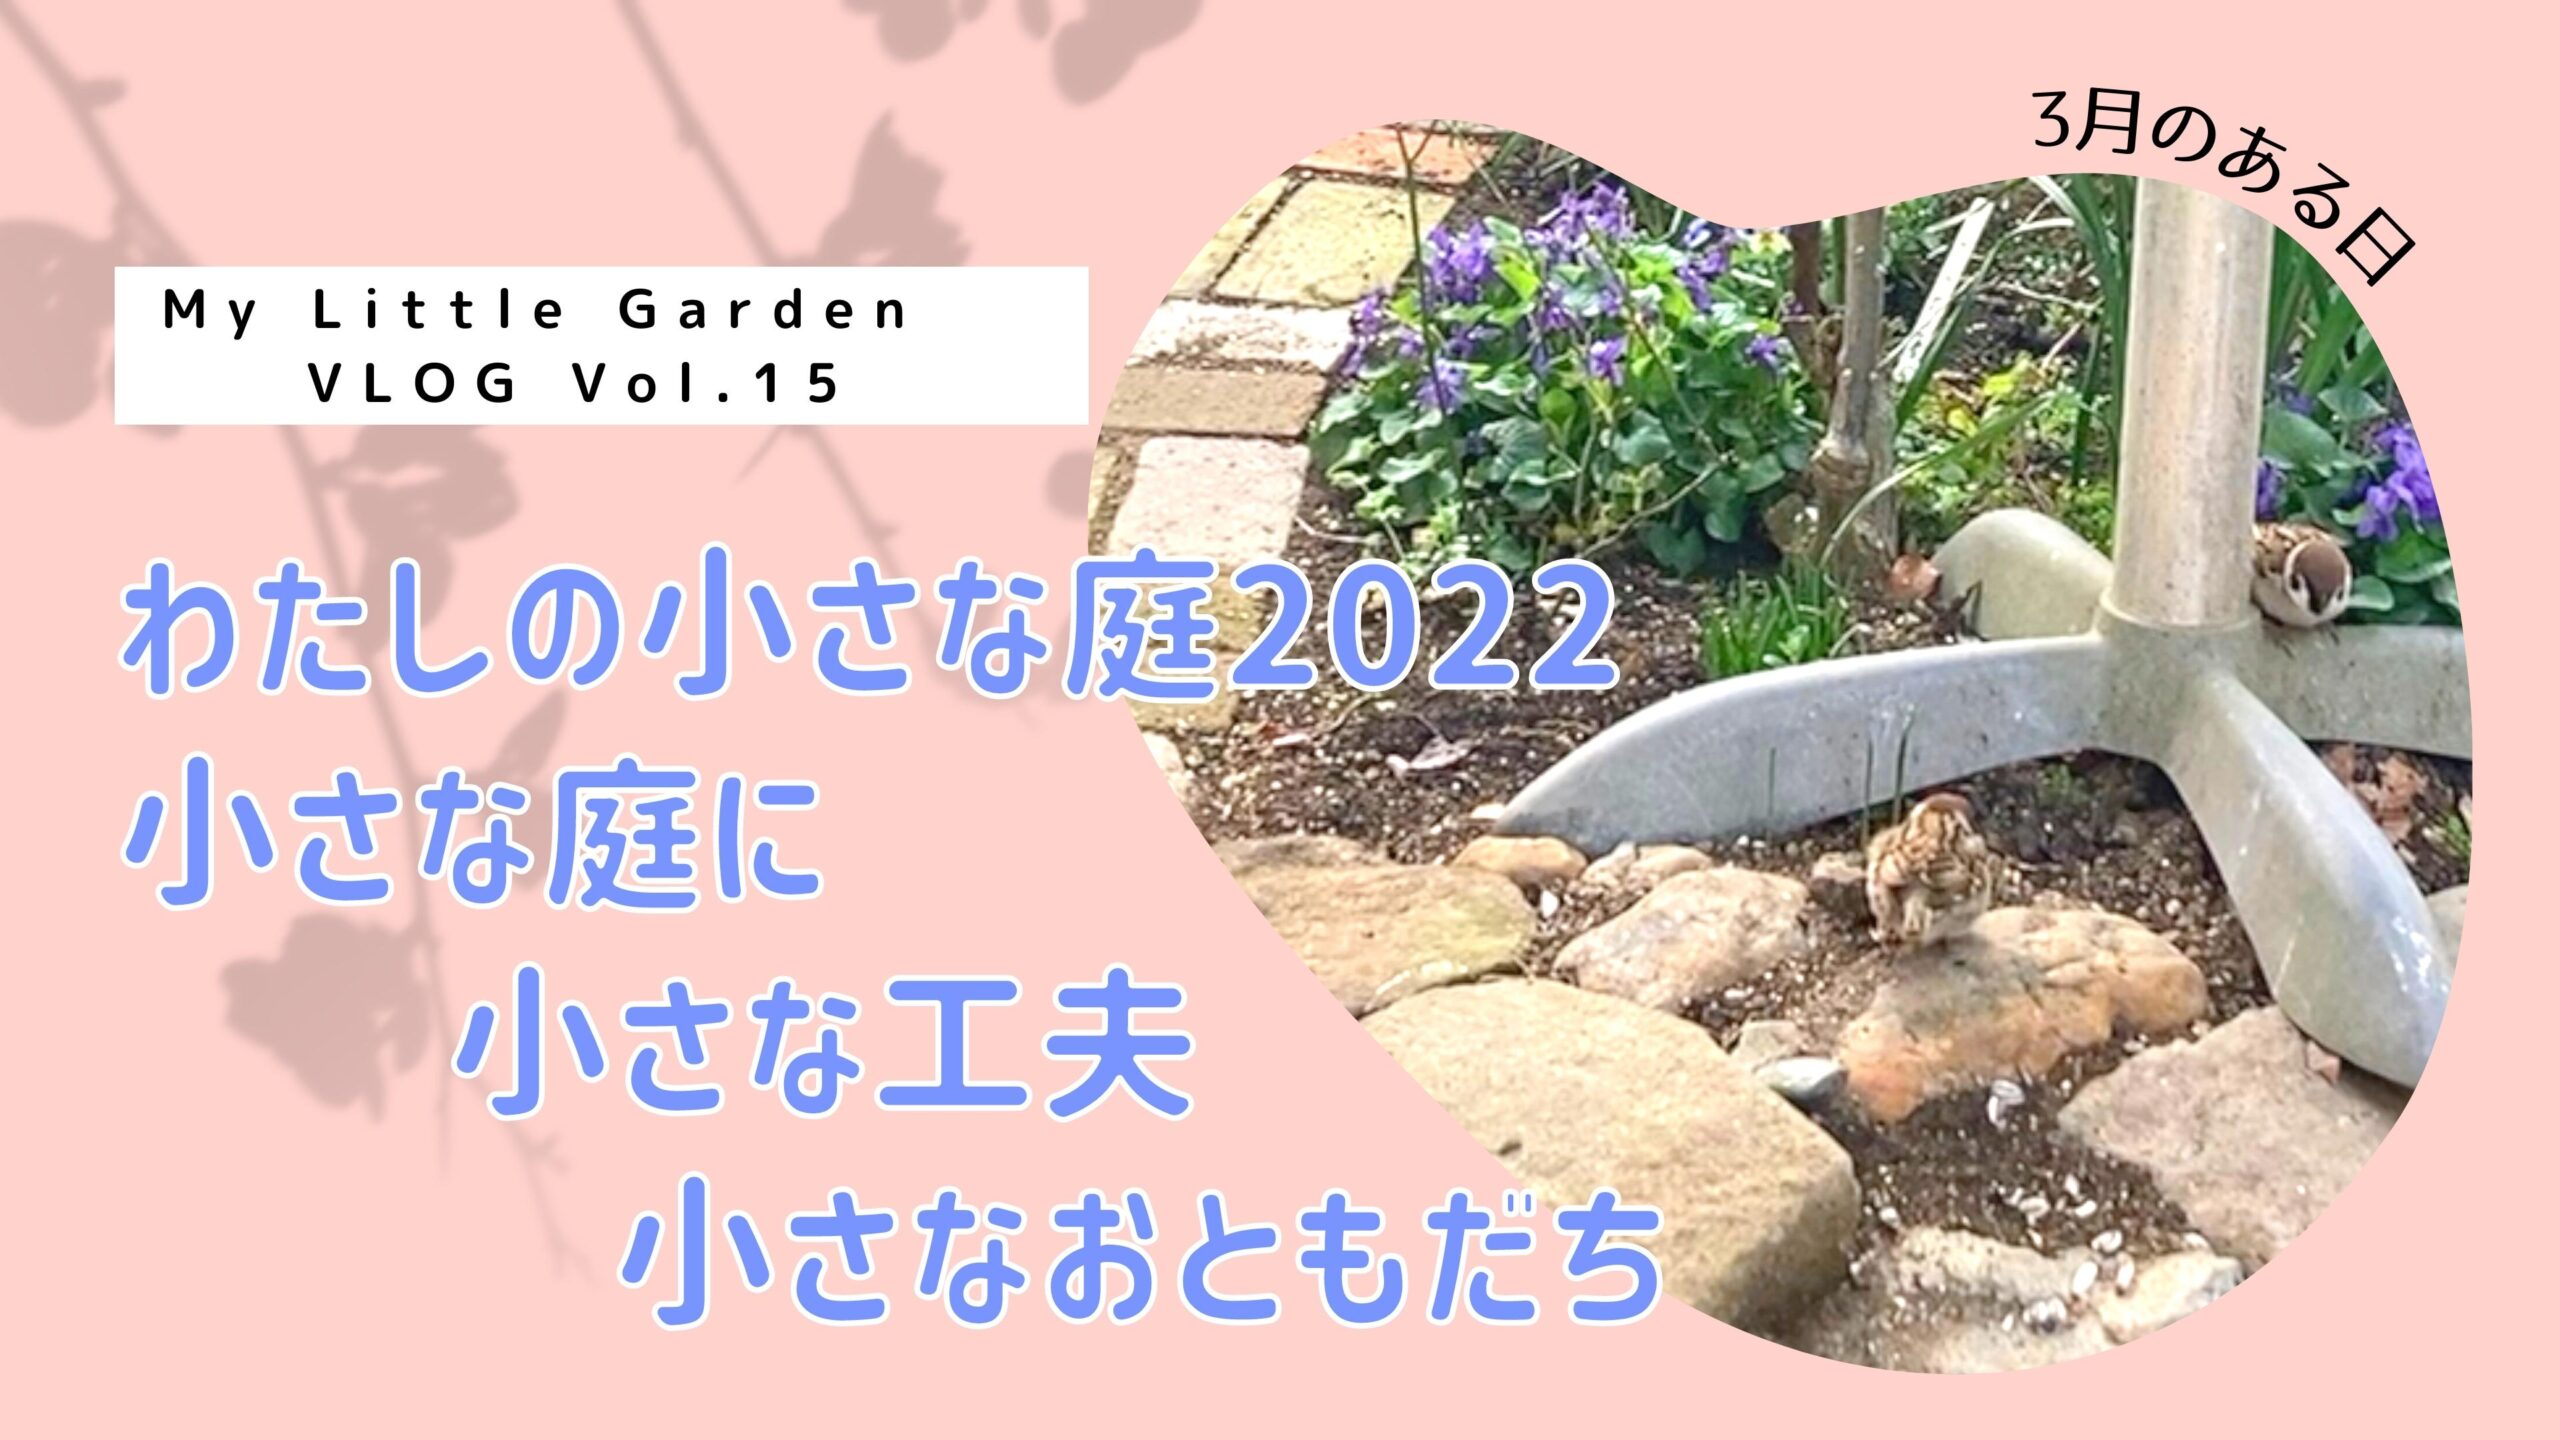 My Little Garden VLOG Vol.15 わたしの小さな庭2022 〜小さな庭に小さな工夫小さなおともだち〜 をYouTubeにアップロードしました！！！